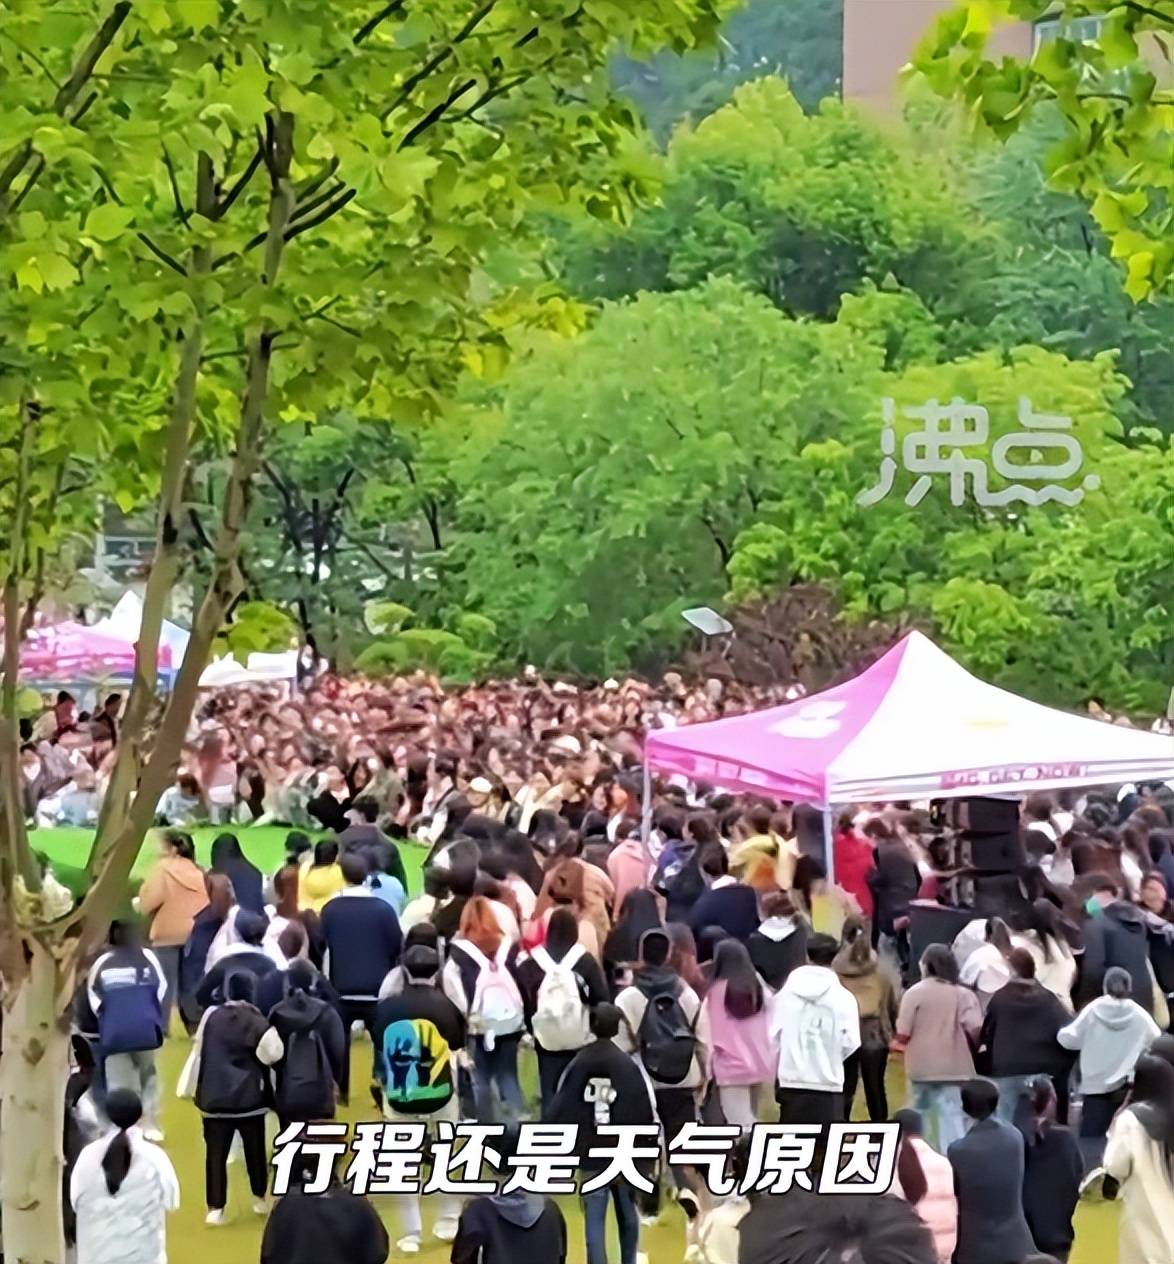 刘畊宏回应两万学生在寒风中苦等却被鸽：当天行程并未确定，不知道这么多学生在等自己，非常心疼他们